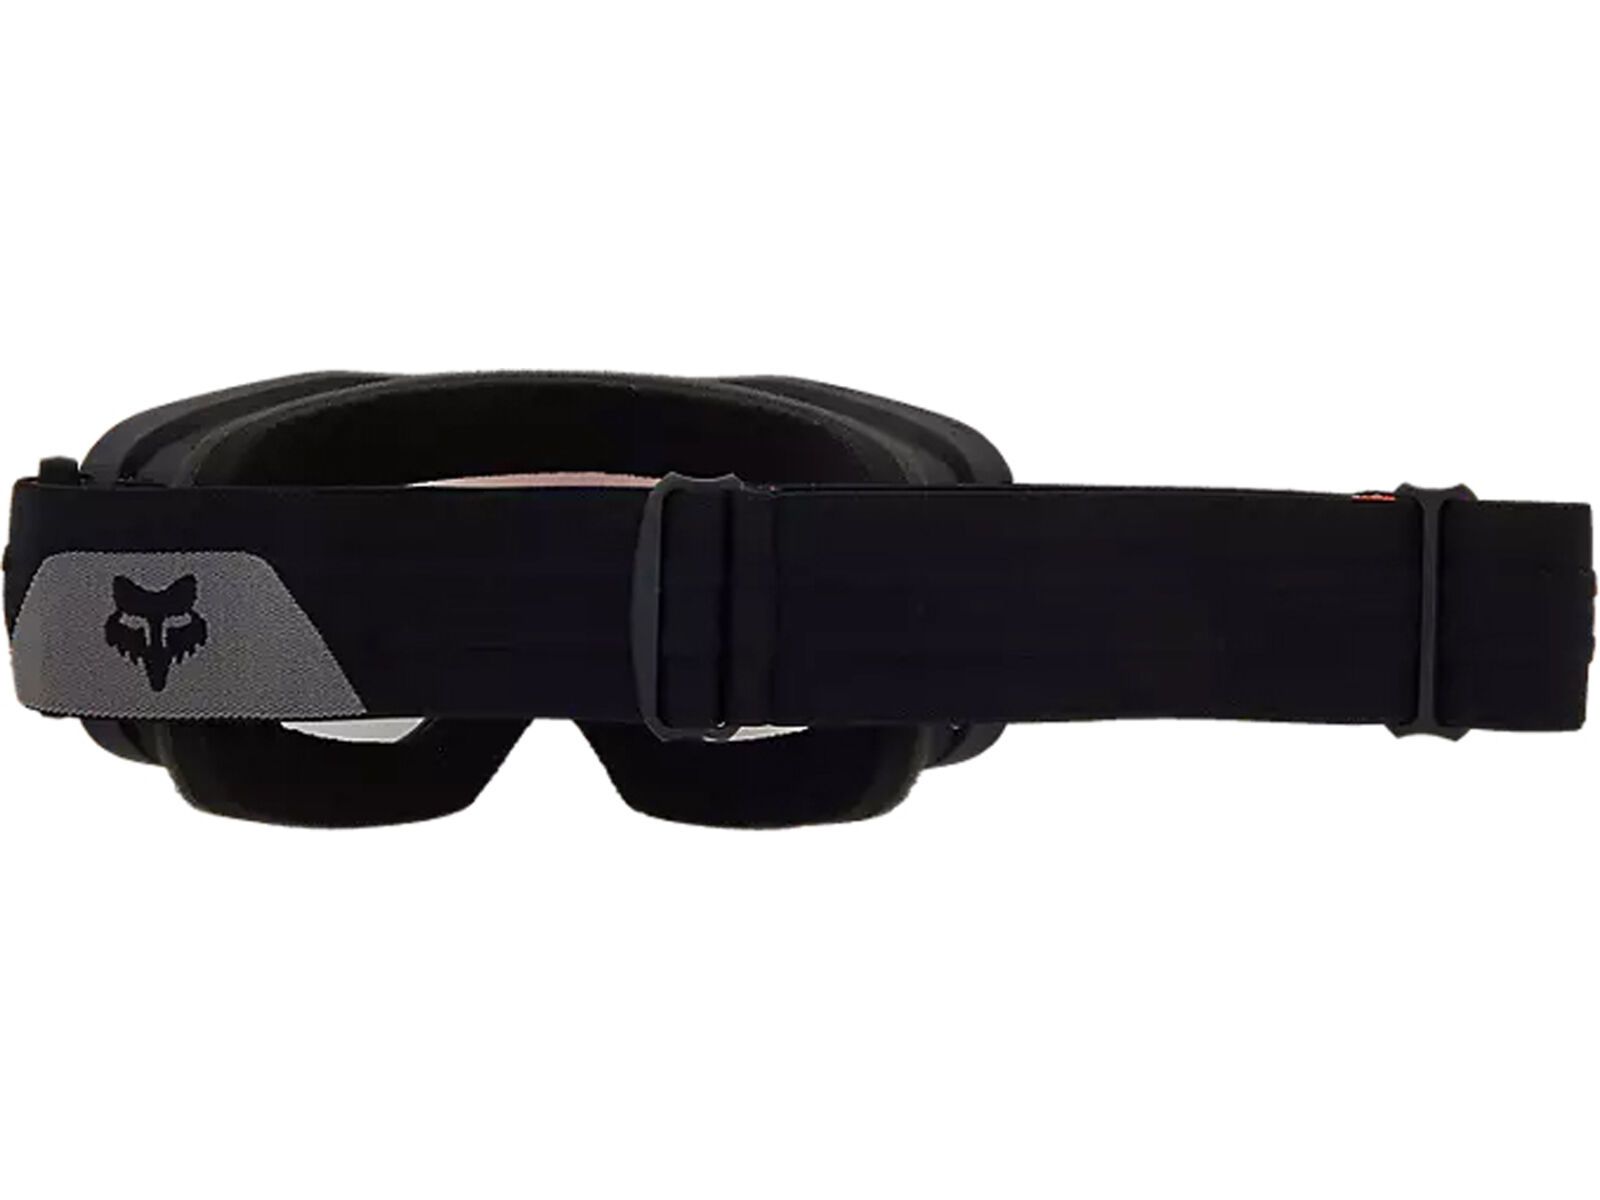 Fox Main X Goggle - Non-Mirrored/Offroad, black | Bild 2